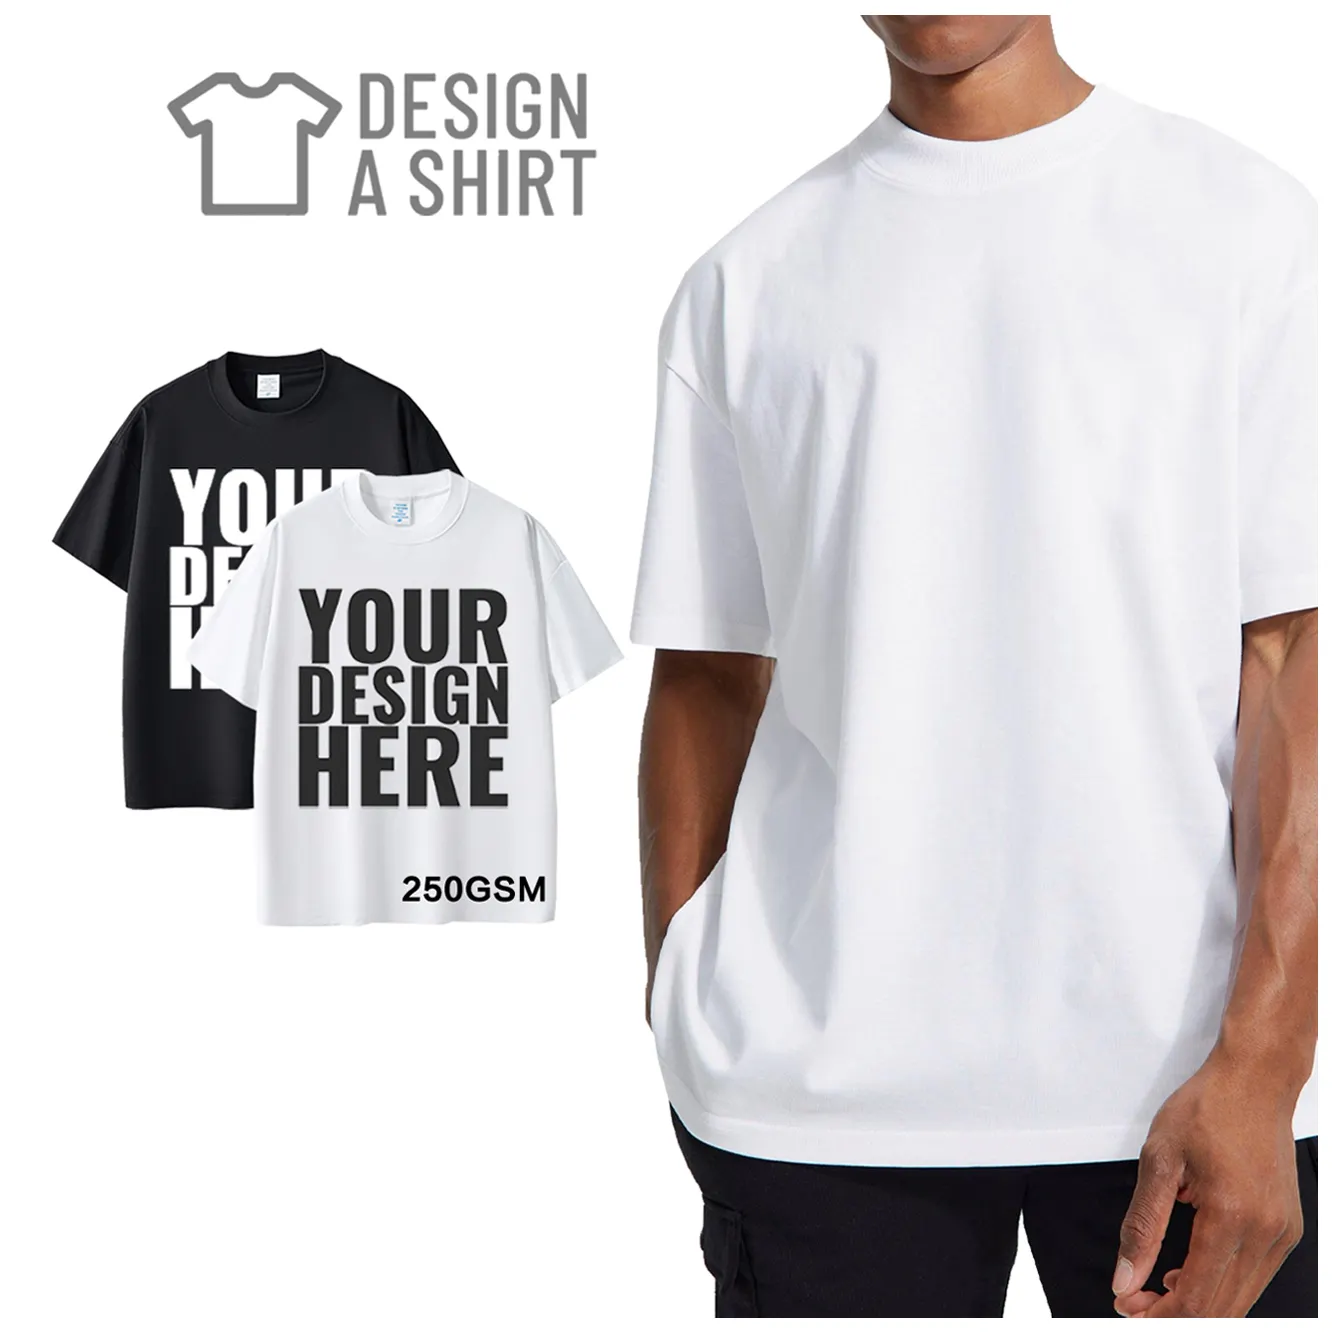 250 GsmヘビーウェイトTシャツカスタムデザインブランク100% コットンラウンドネックTシャツカスタムTシャツを製造